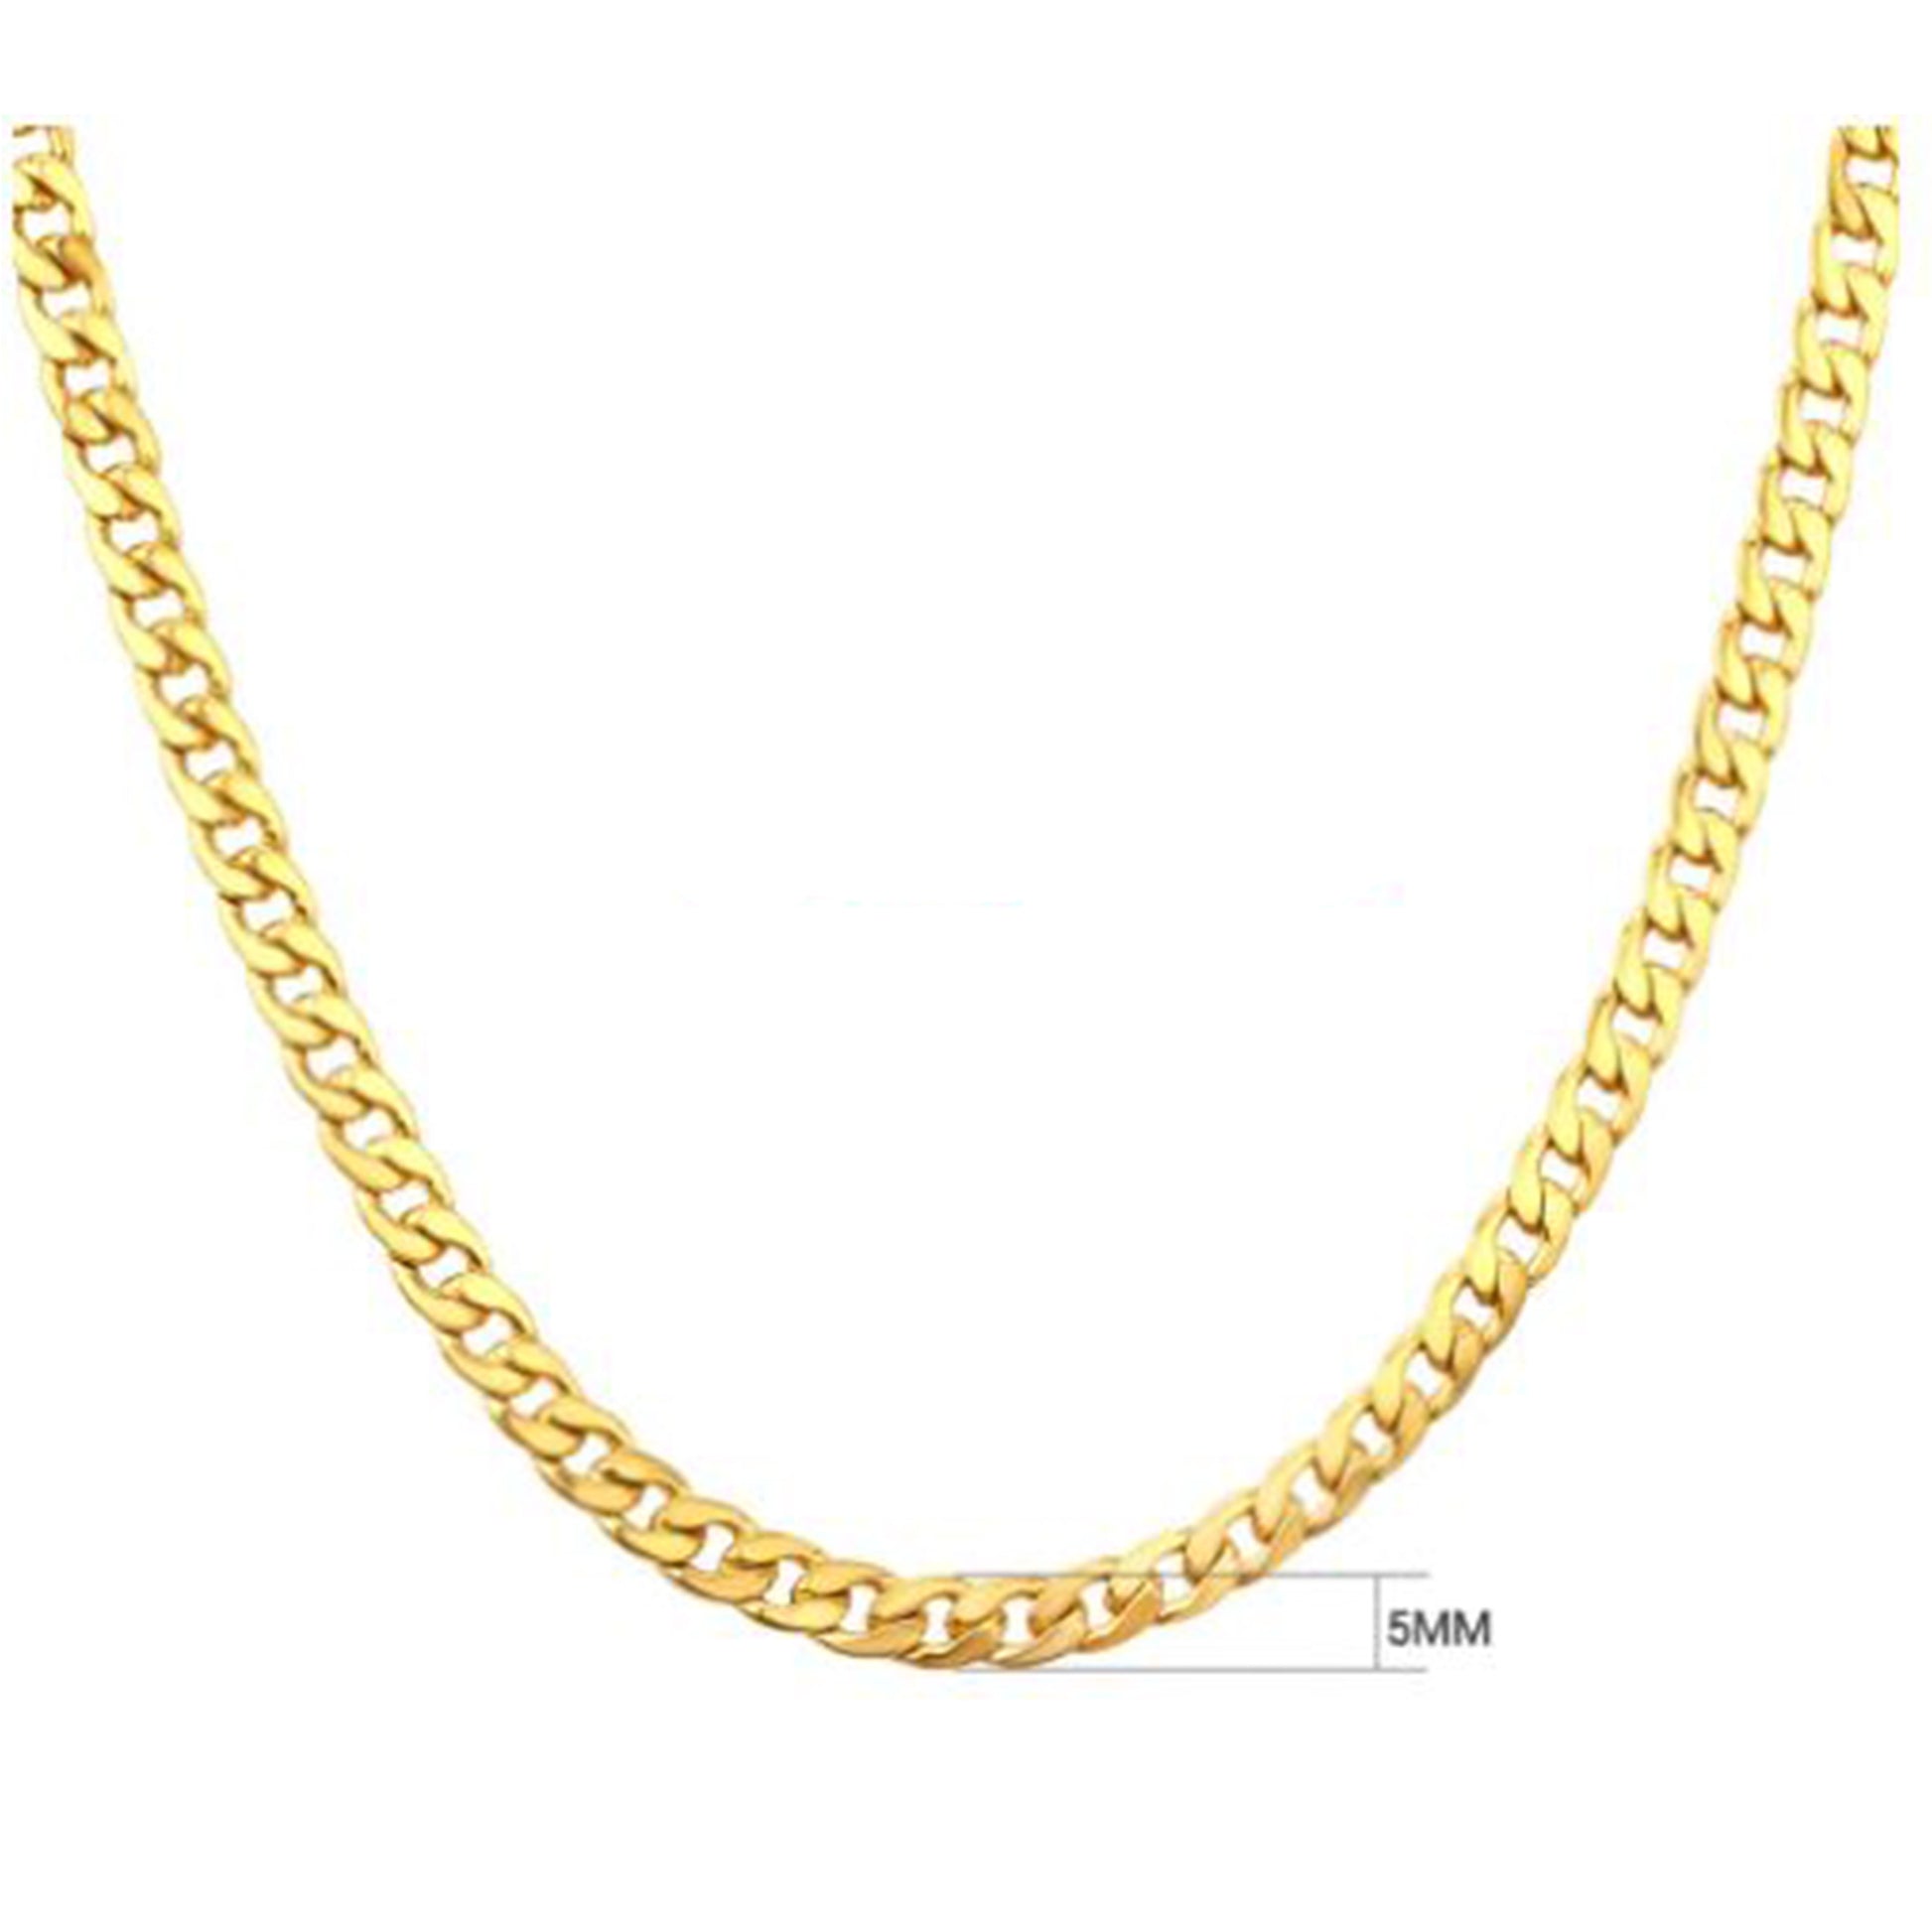 Goldchain Basic 5mm Necklace - ROCKmint